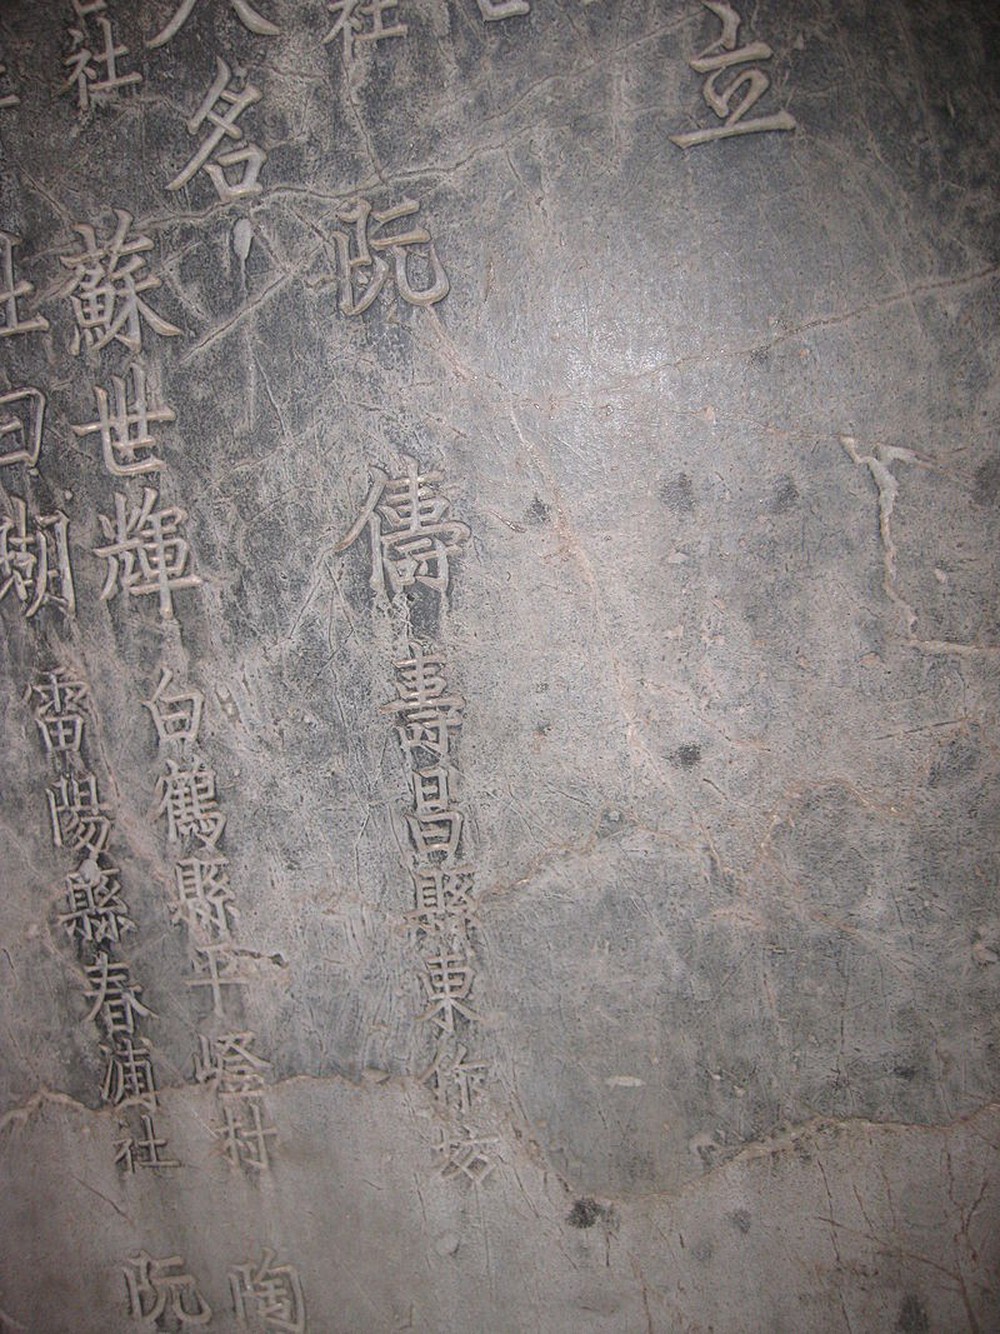 Hoàng giáp Nguyễn Trù bồi đắp nền học, khắc đá đề danh - Ảnh 5.